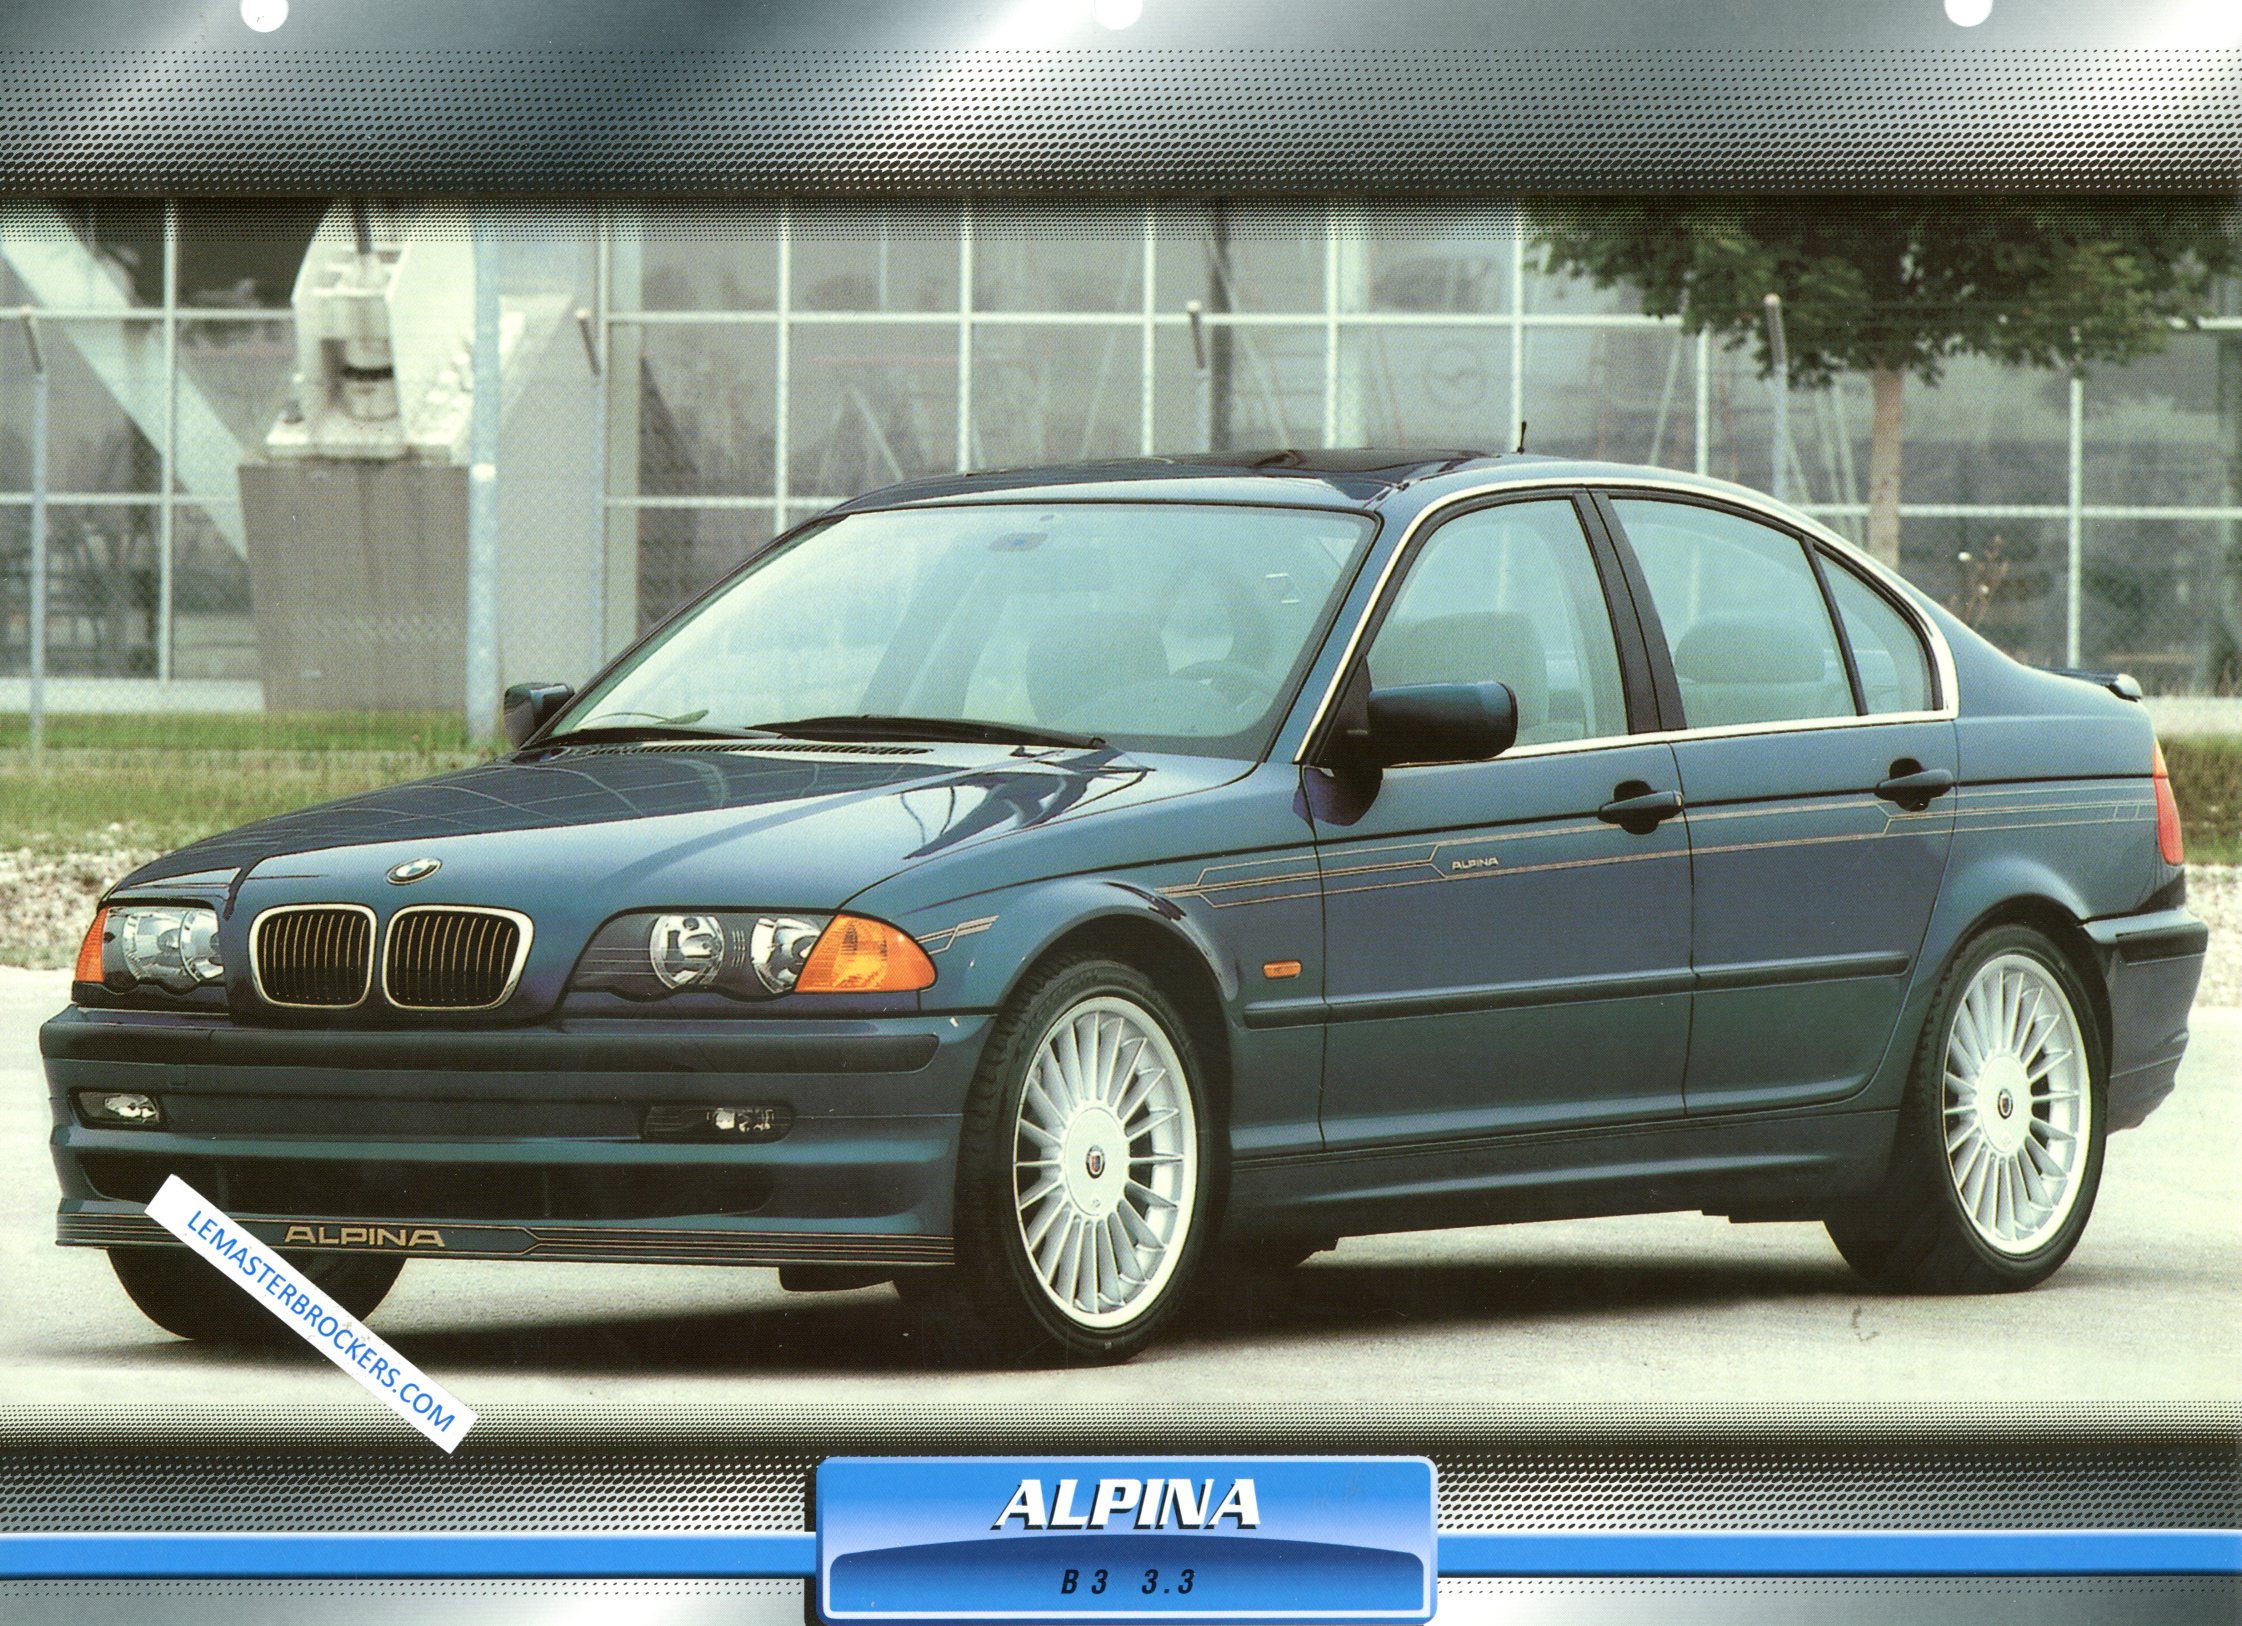 FICHE AUTO ALPINA B3 3.3  1999 BMW SERIE 3